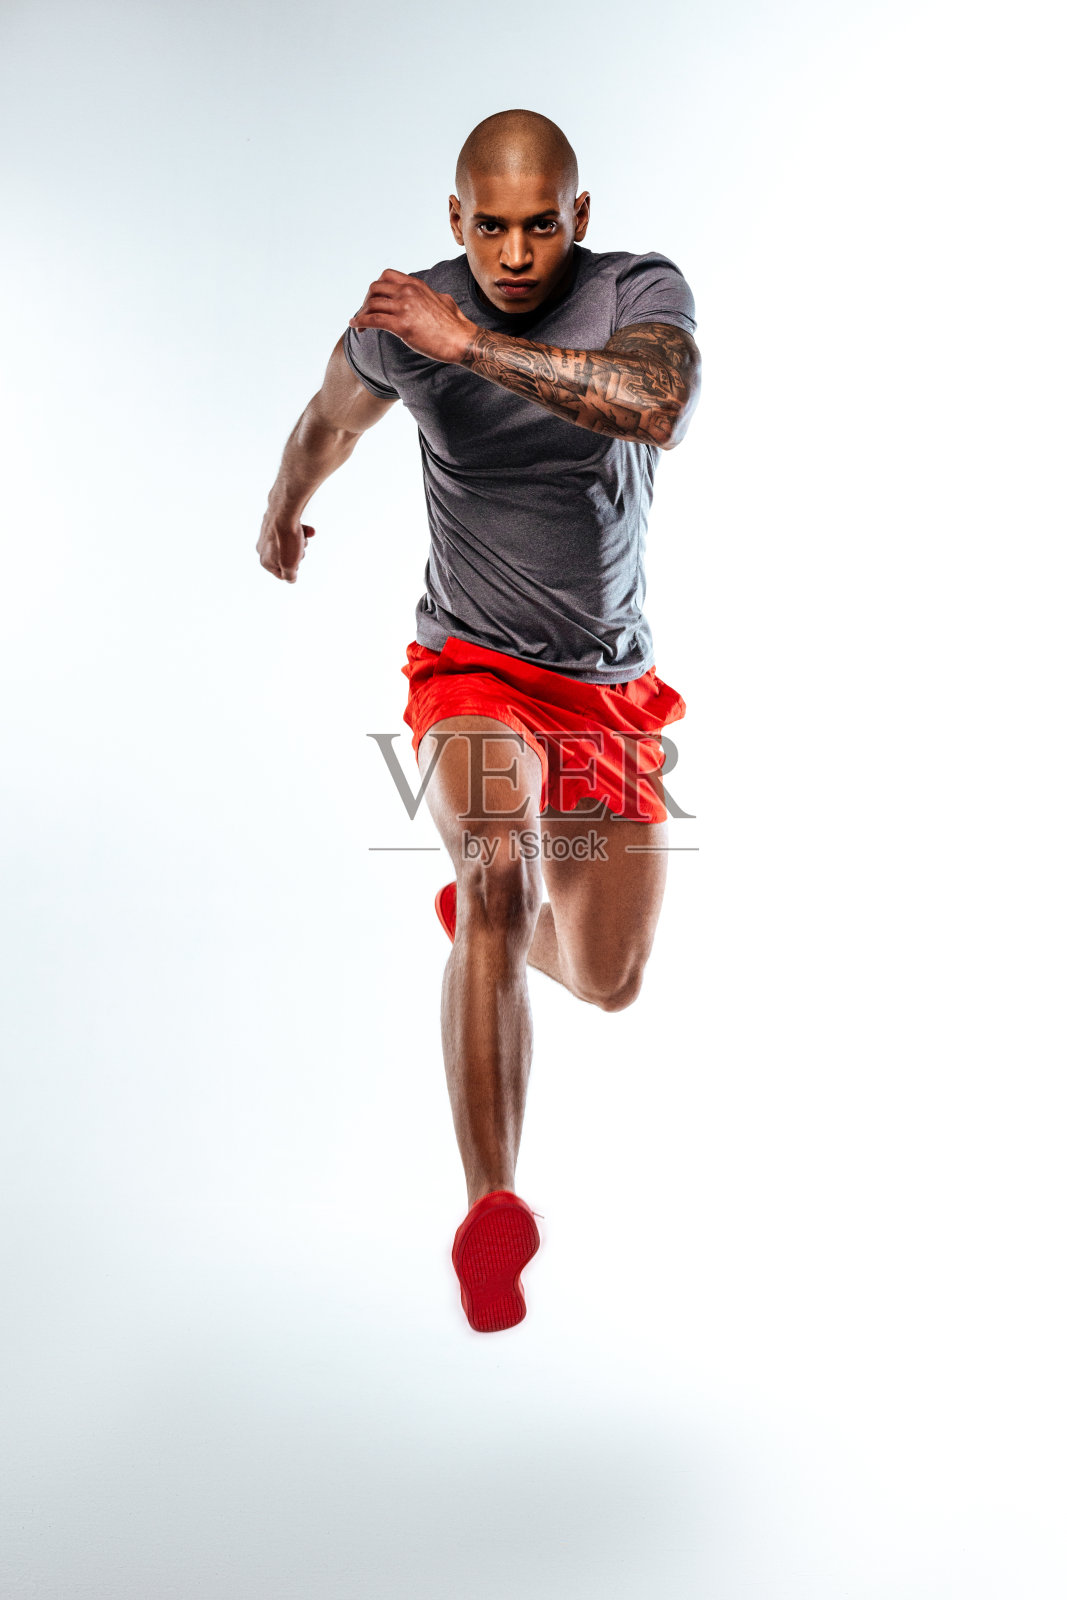 跑步者穿着运动服展示他的肌肉力量照片摄影图片